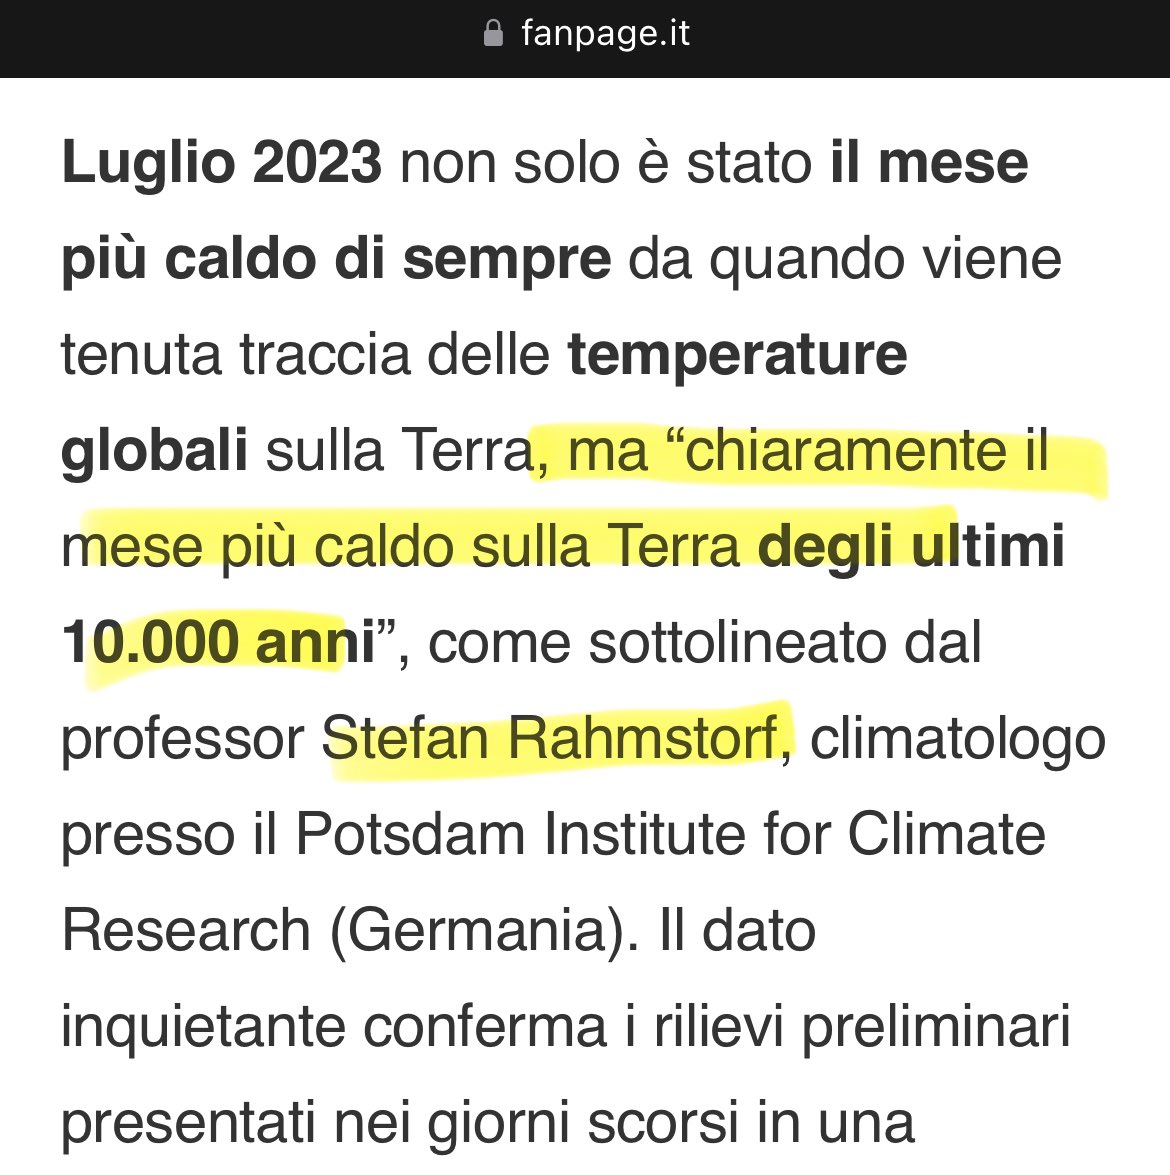 LOLlissimo @RobertoIngross2 Lo dice il professor Stefan Rahmstorf, climatologo presso il Potsdam Institute for Climate Research (Germania), non FanPage. Perché non si mettono d’accordo questi climatologi?